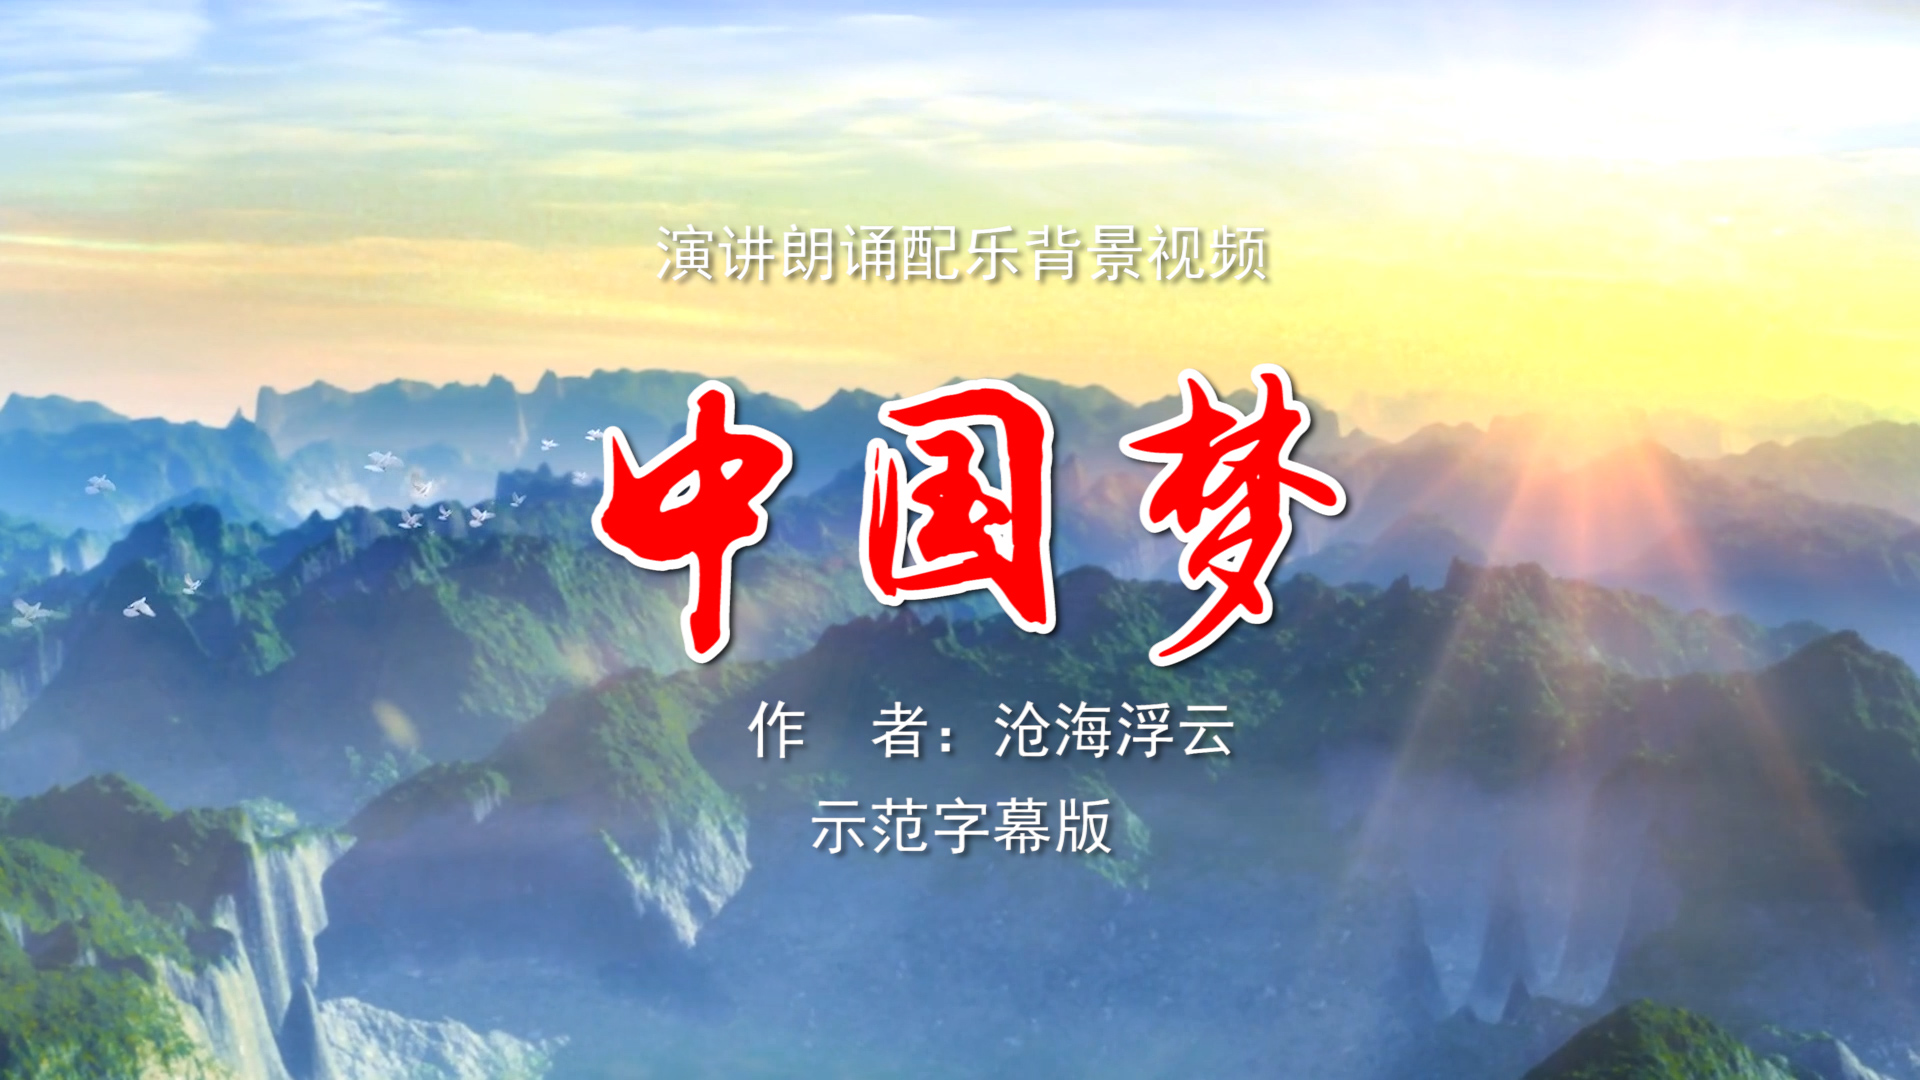 中国梦 诗歌朗诵配乐伴奏舞台演出LED背景大屏幕视频素材TV